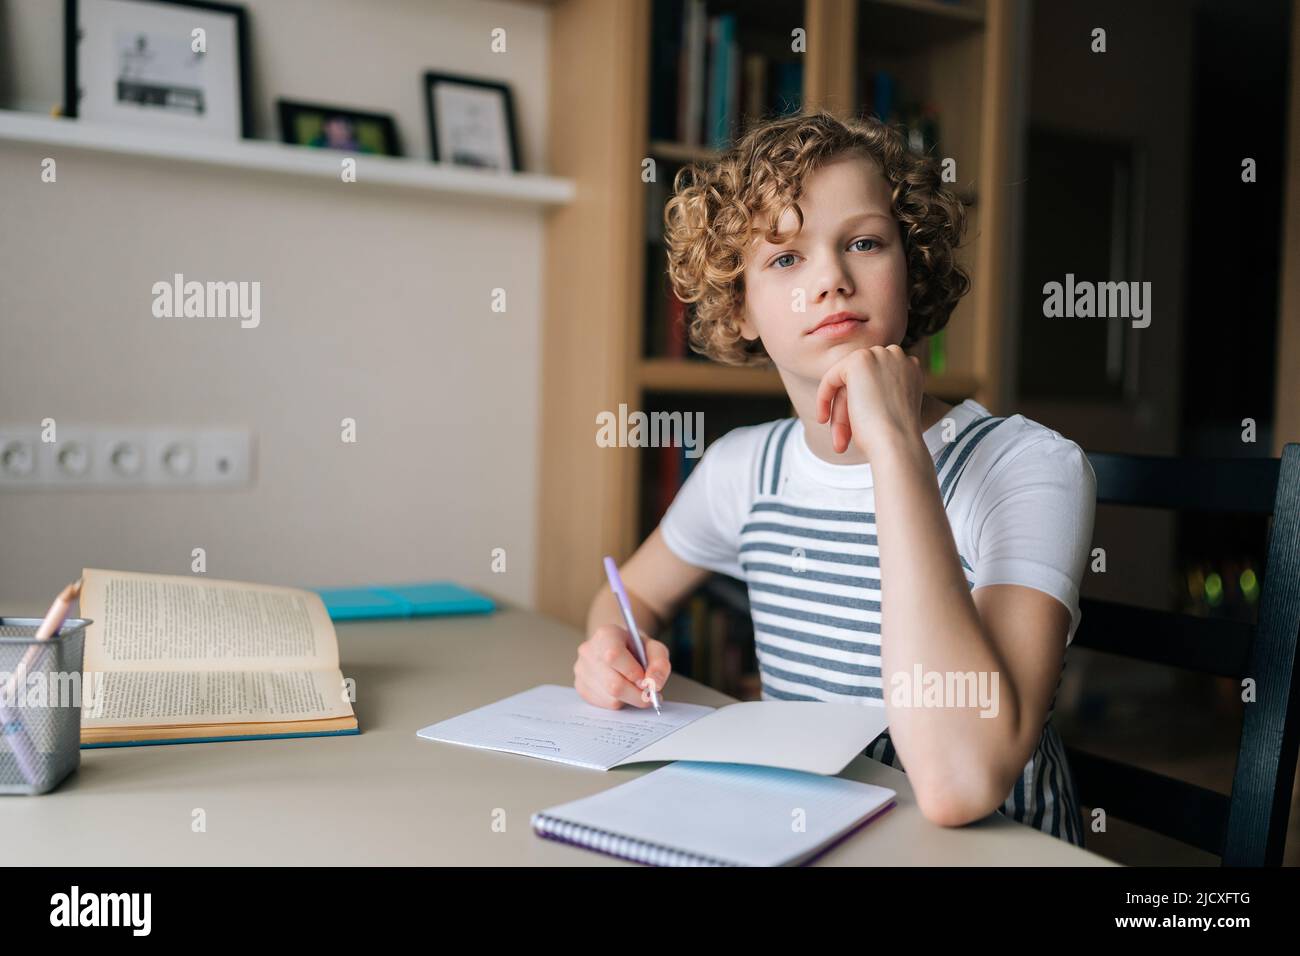 Portrait of adorable lockig kleine Schülerin zu Hause studieren, Hausaufgaben machen, Stift halten, Notizen schreiben, Blick auf die Kamera. Stockfoto